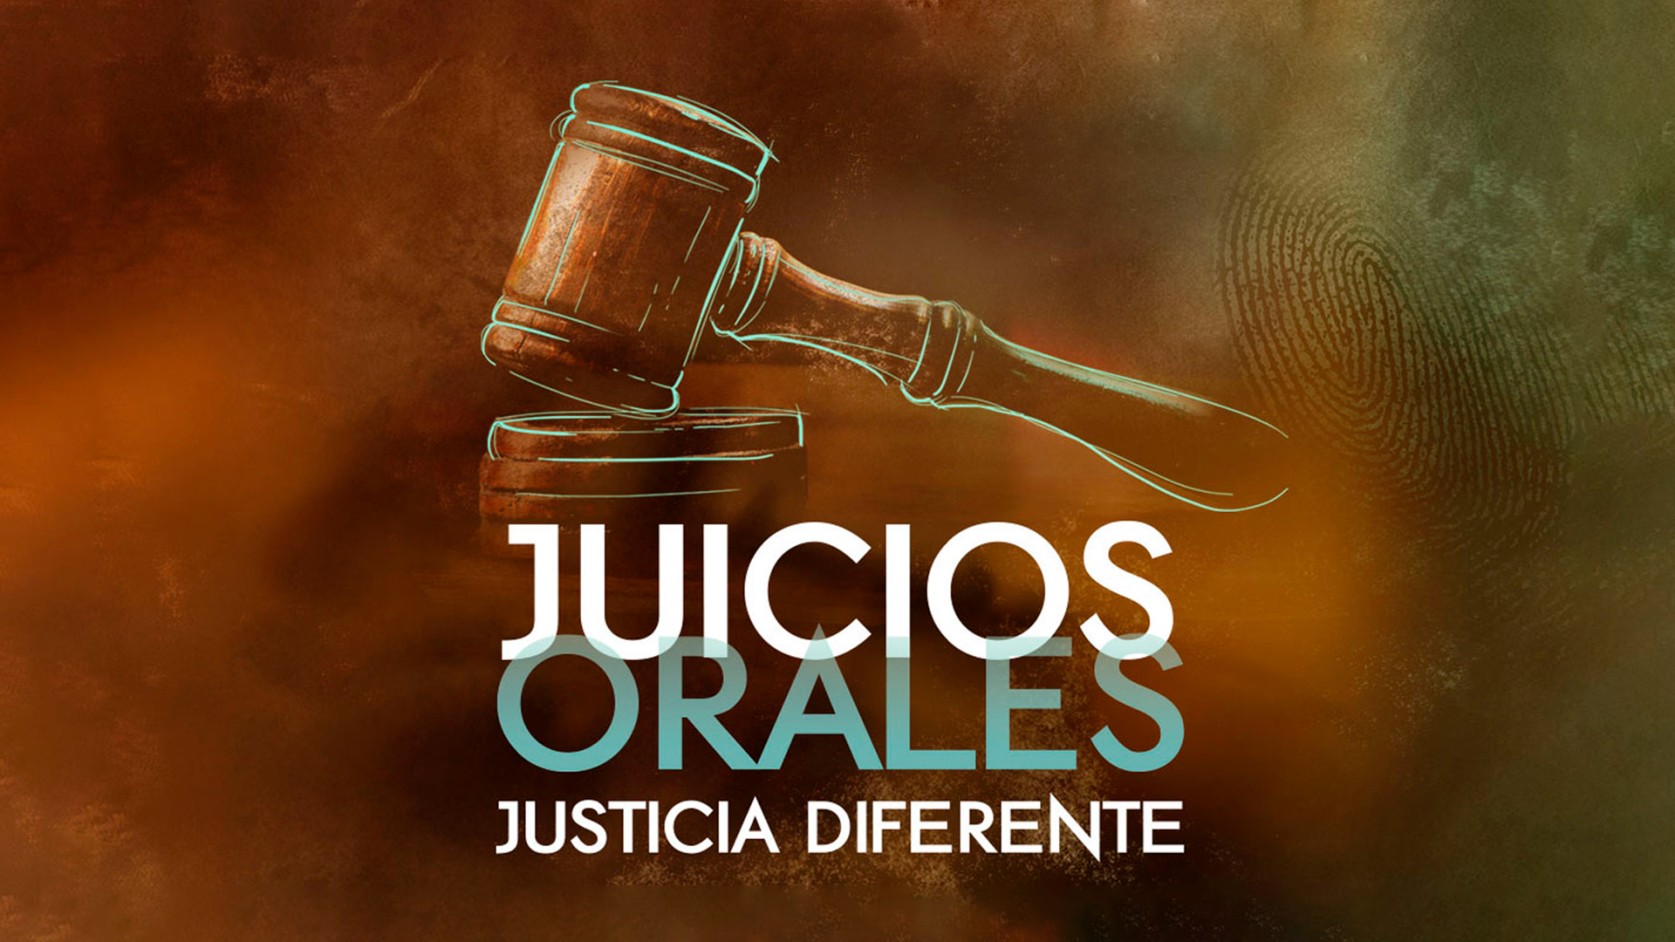 Juicios Orales, justicia diferente